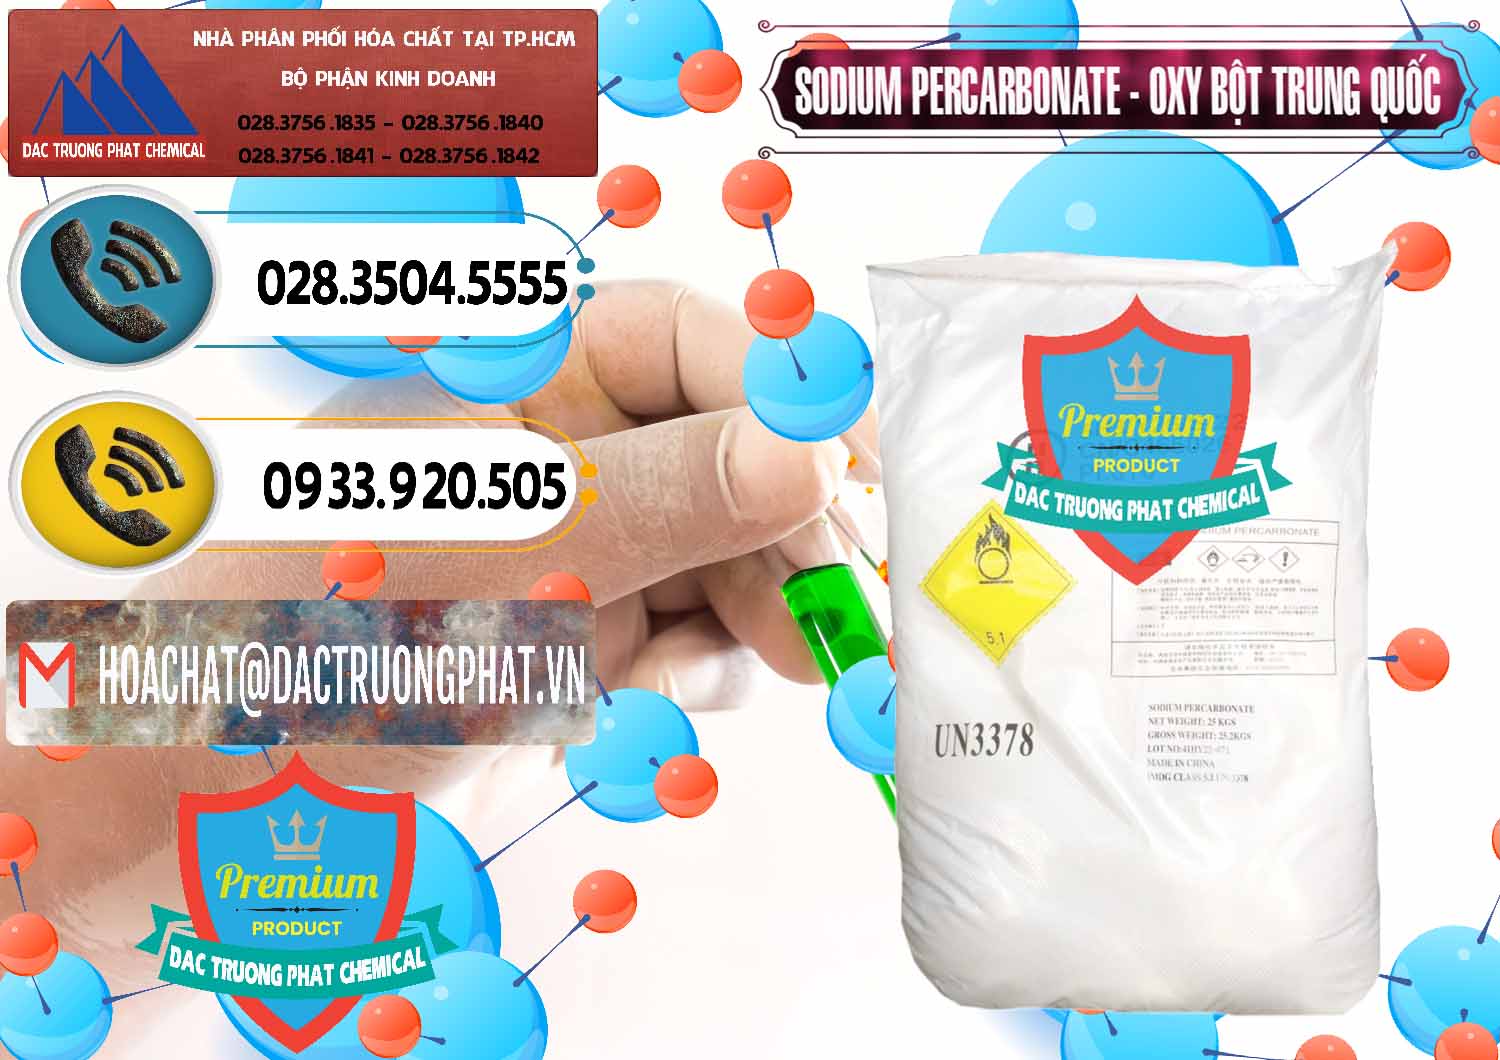 Cty chuyên bán ( cung ứng ) Sodium Percarbonate Dạng Bột Trung Quốc China - 0390 - Công ty kinh doanh - cung cấp hóa chất tại TP.HCM - hoachatdetnhuom.vn